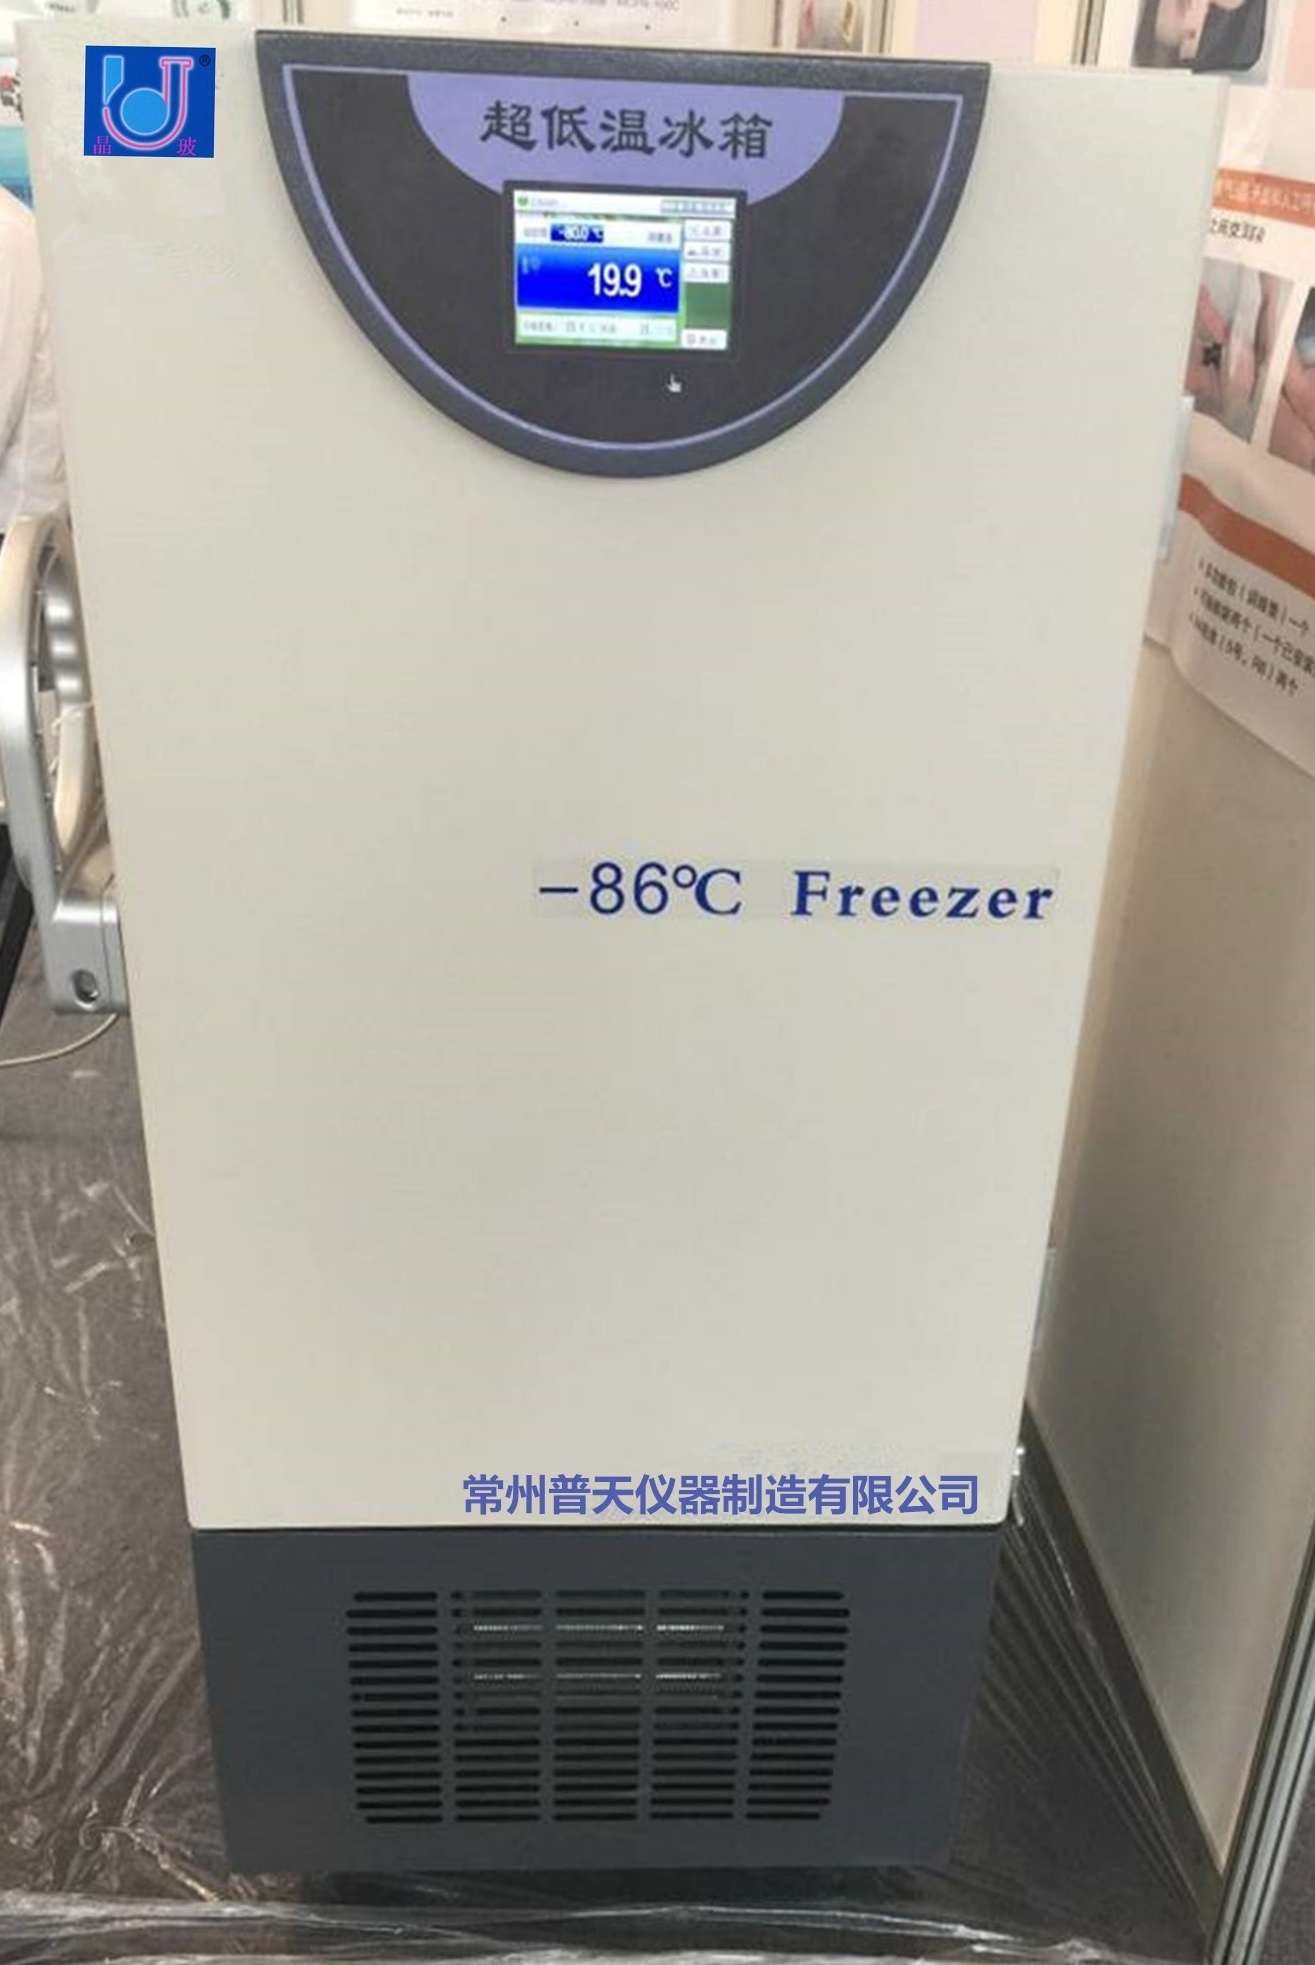 超低温冰箱的图片